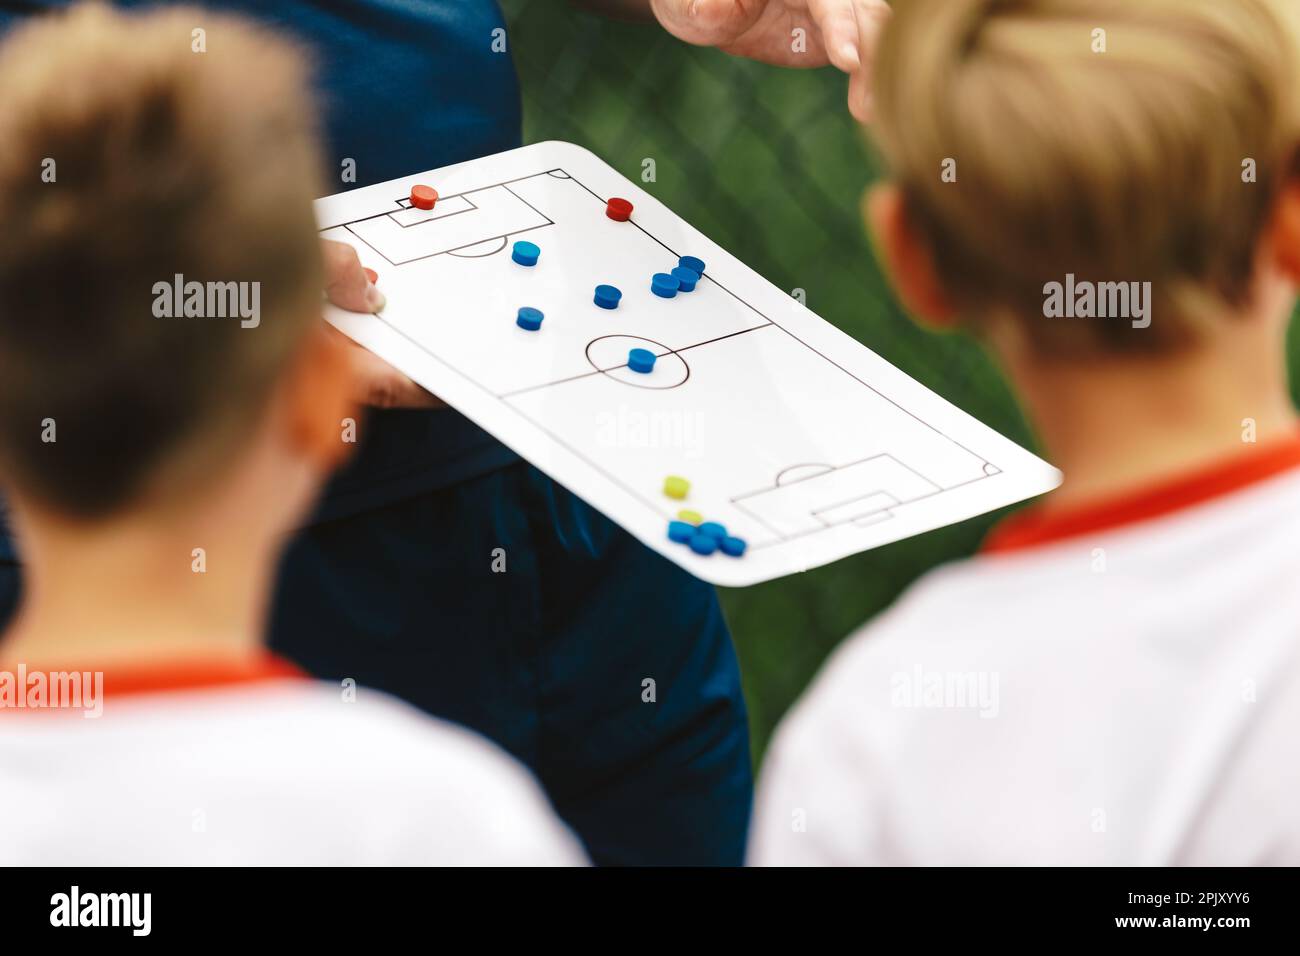 Un jeune entraîneur explique à un groupe d'enfants la stratégie de l'équipe de football à l'aide d'un tableau tactique. Coach scolaire qui coache les enfants dans une équipe sportive. Stratégie bo Banque D'Images